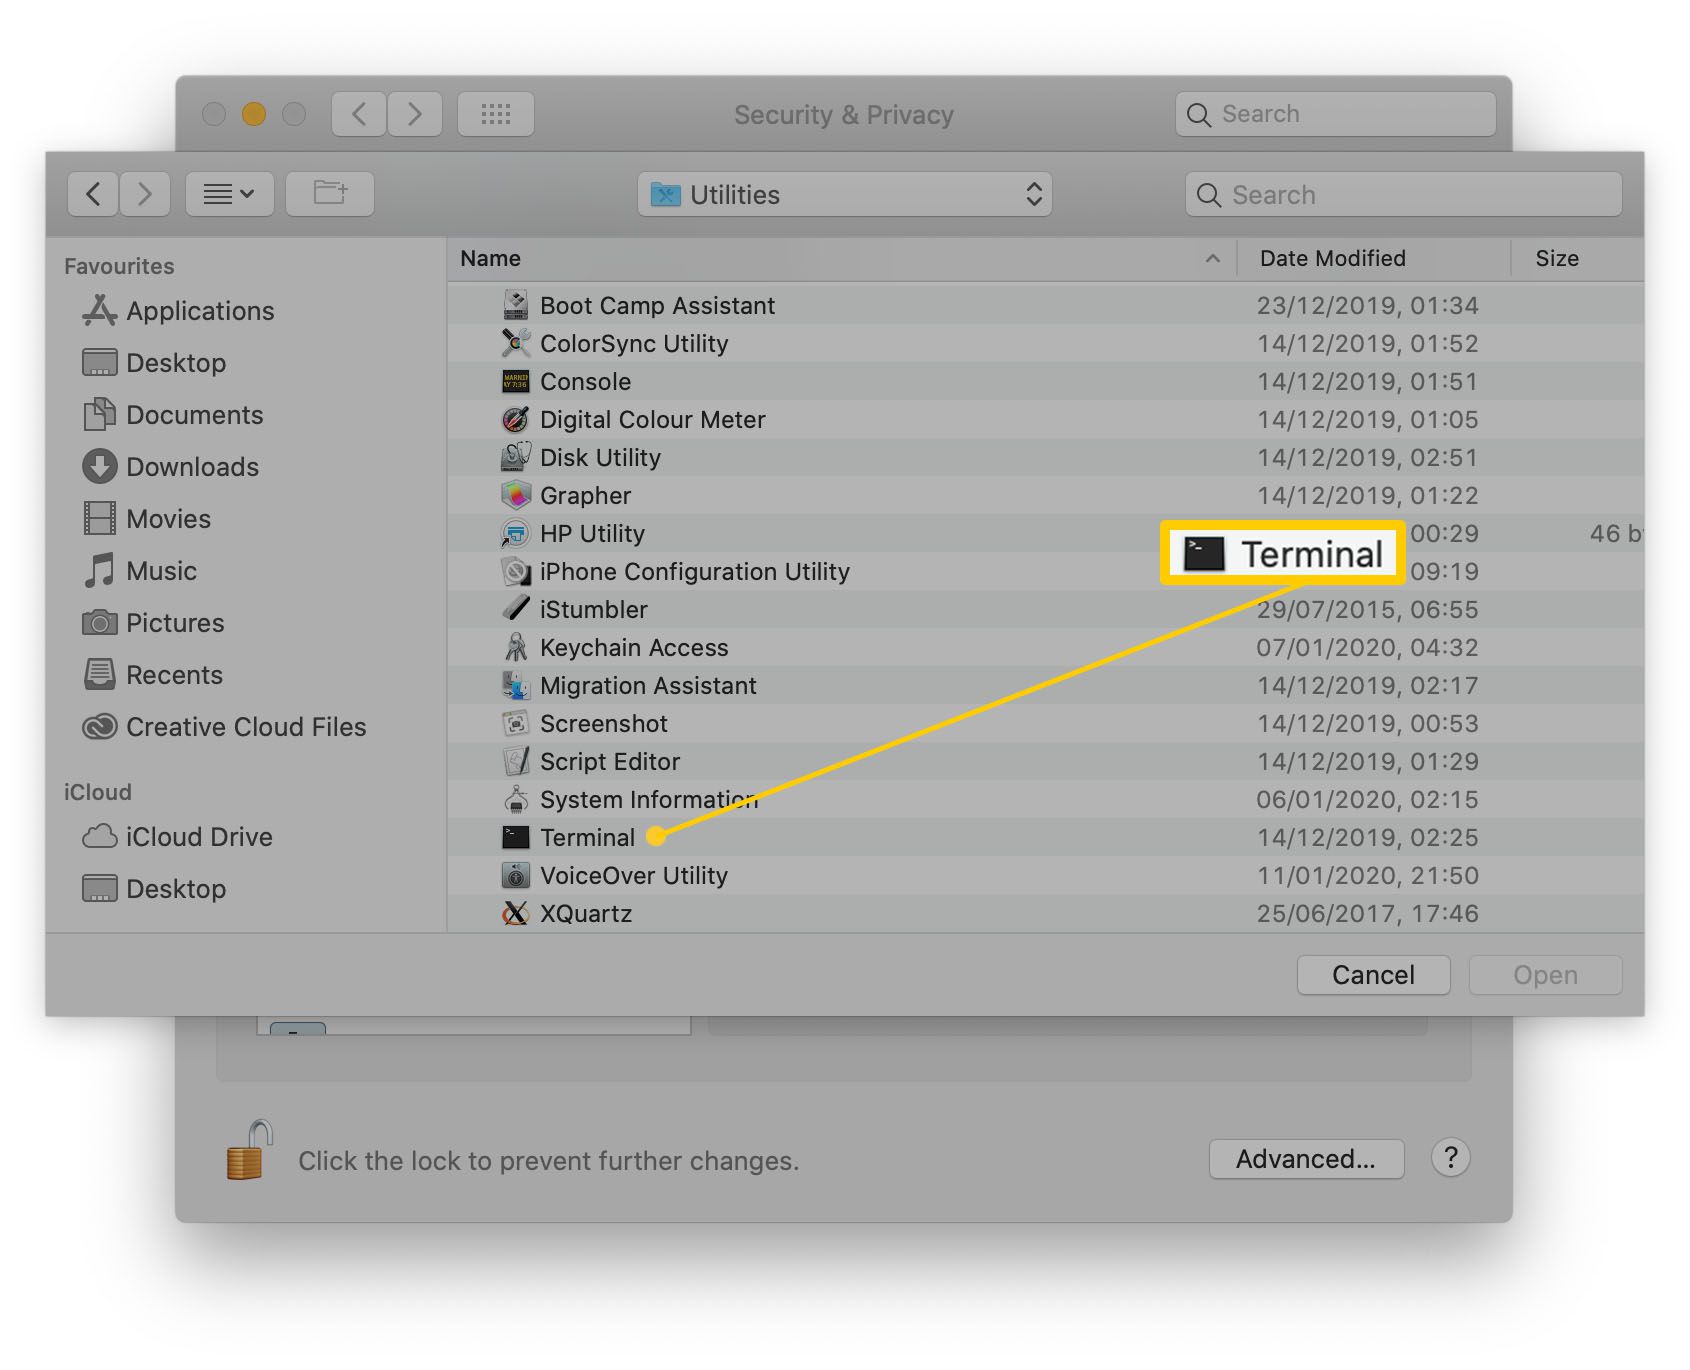 MacOS s terminálem zvýrazněným v seznamu aplikací